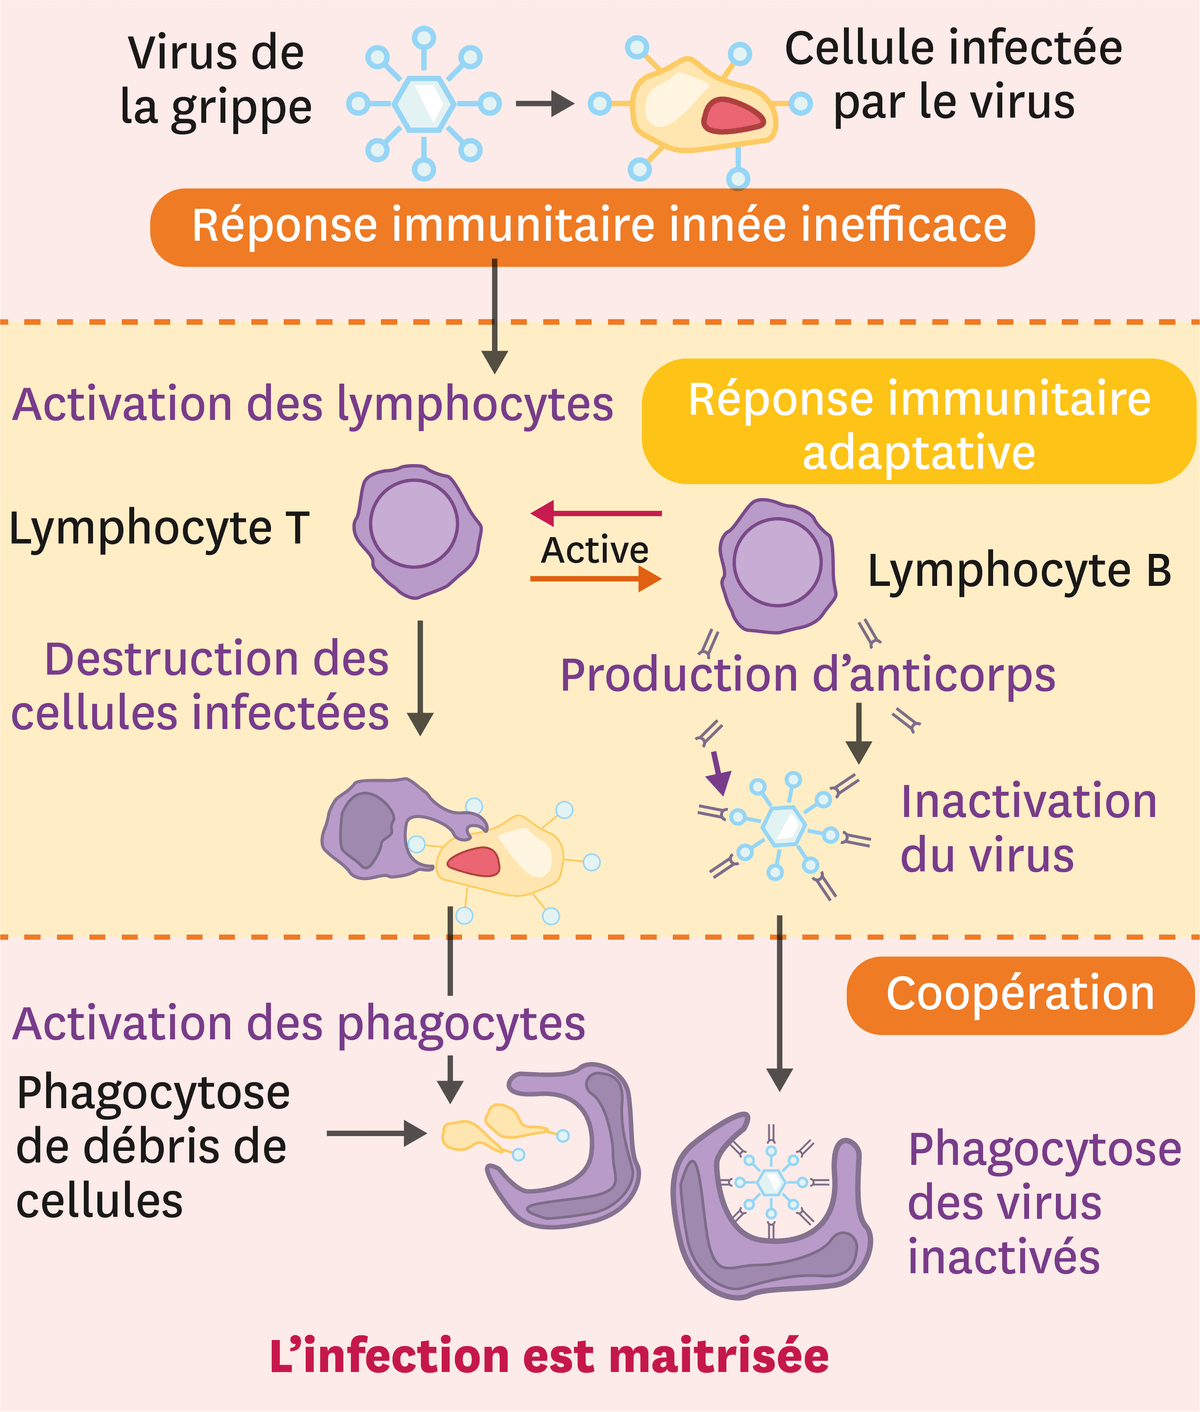 La coopération entre les acteurs du système immunitaire.
  Le virus de la grippe infecte une cellule. Il y a donc une réponse immunitaire innée inefficace. Cela active des lymphocytes : les lymphocyte T et B. Les lymphocyte T détruisent les cellules infectées et les B produisent des anticorps qui permettent d'inactiver le virus. C'est la réponse immunitaire adaptative. Ensuite, c'est la cohésion : en détruisant les cellules il y a une activation des phagocytes (phagocytose de débris de cellules) et il y a une phagocytose des virus inactivées grâce aux anticorps.
  Ainsi l'infection est maîtrisée.